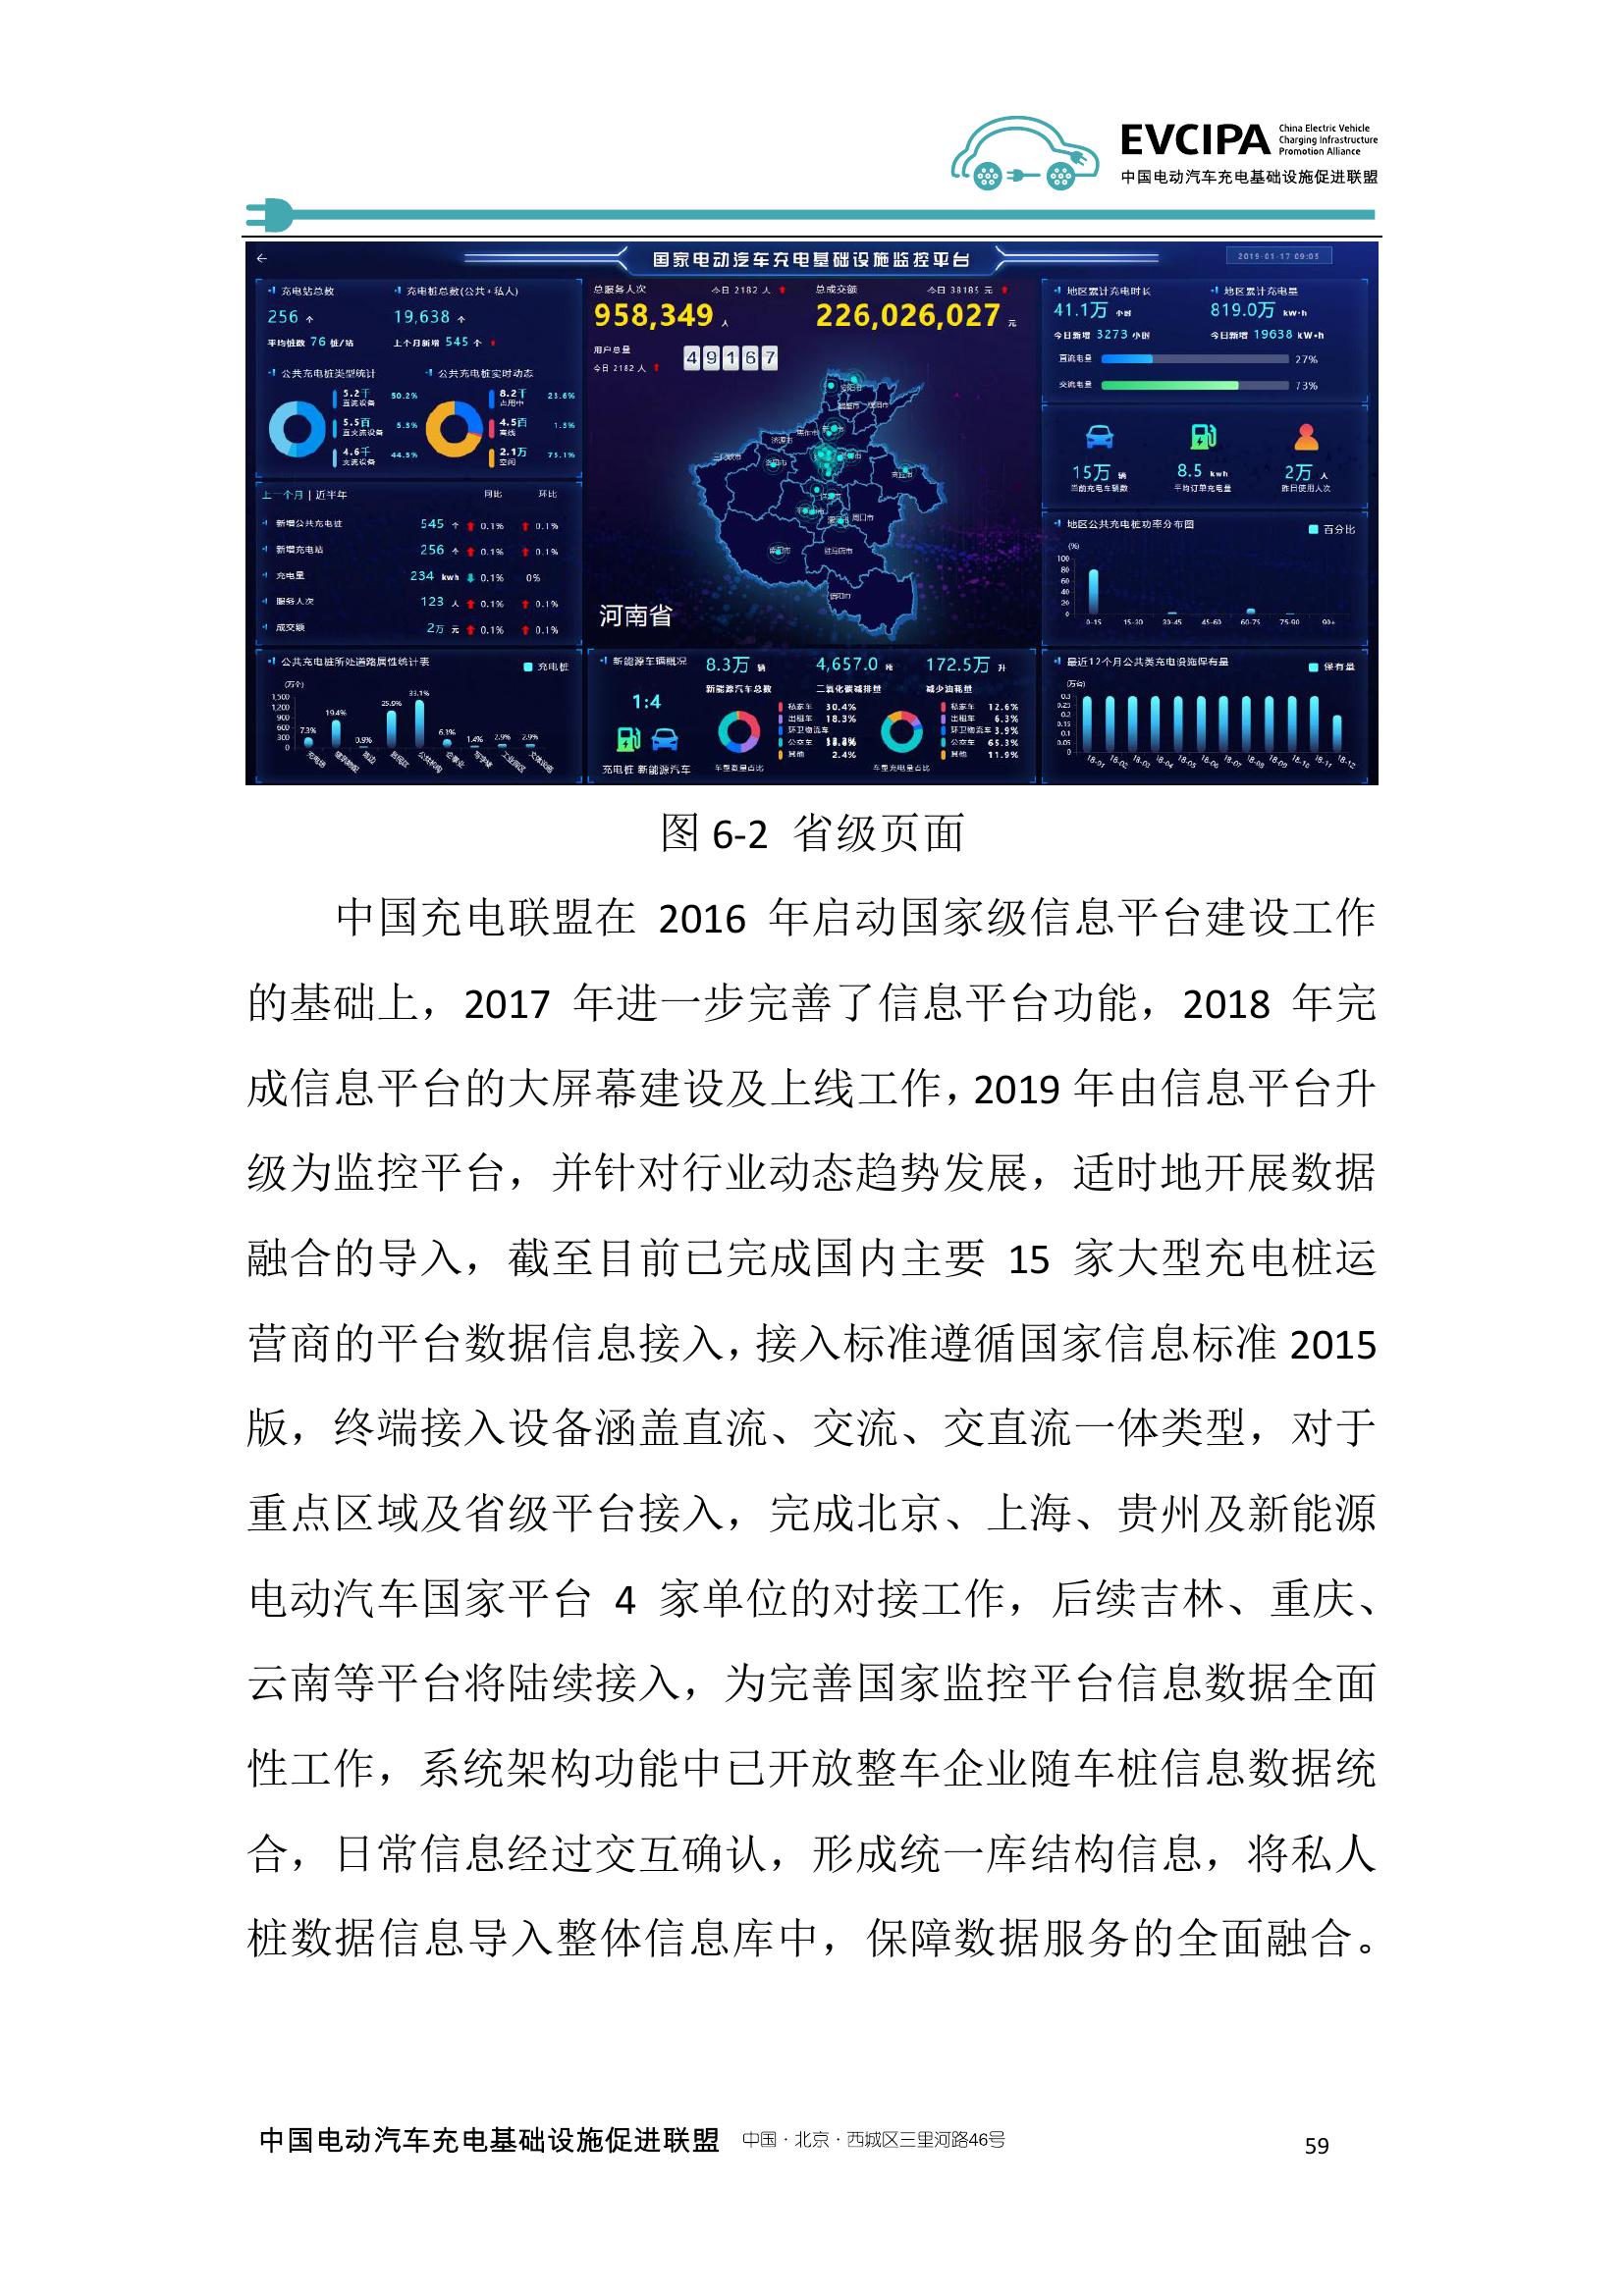 2019-2020年度中国充电基础设施发展报告_000067.jpg